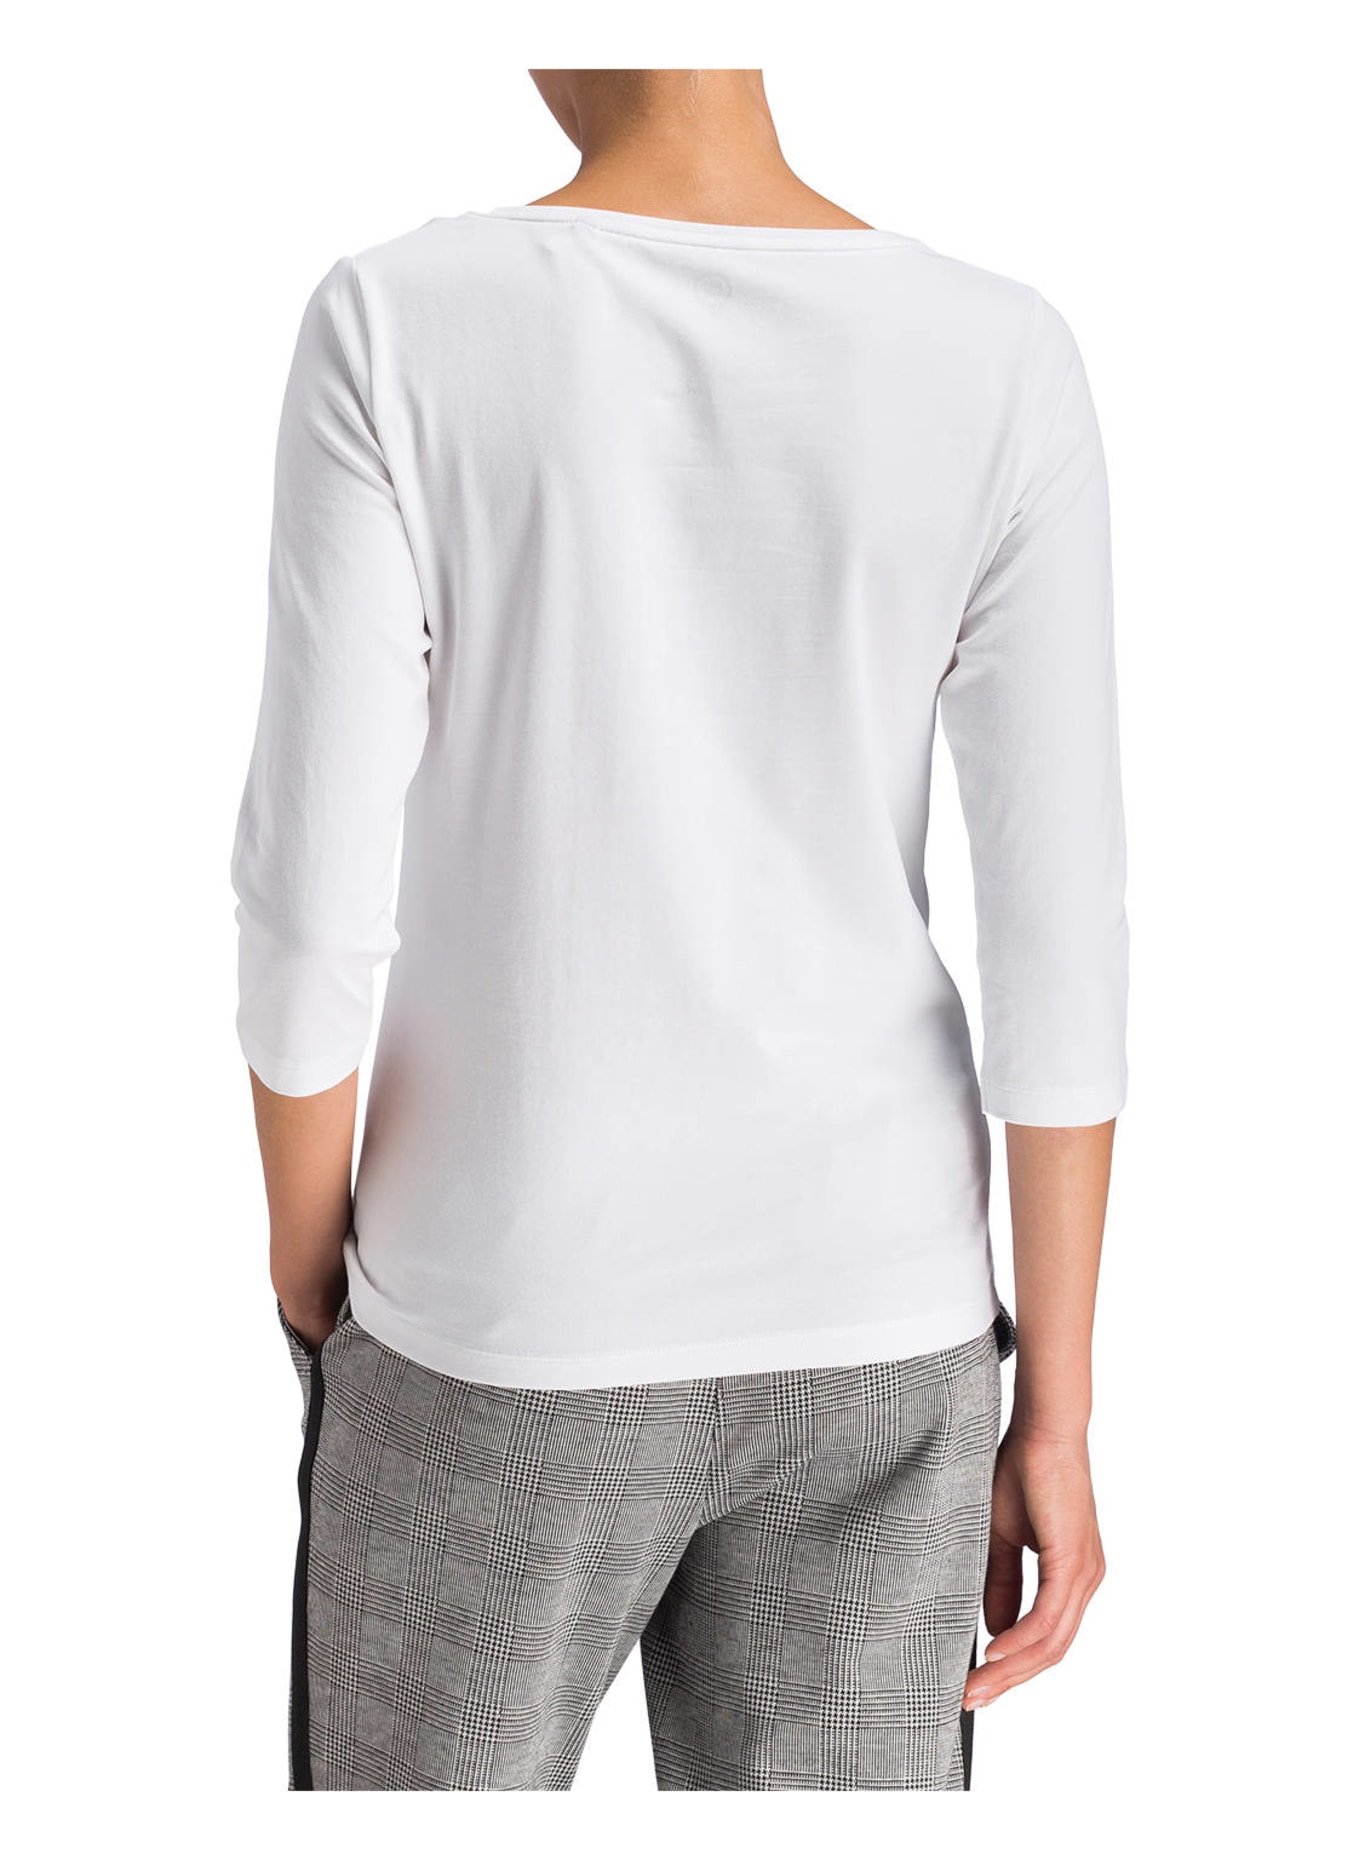 BOVIVA Shirt mit 3/4-Arm, Farbe: 100 WHITE (Bild 3)